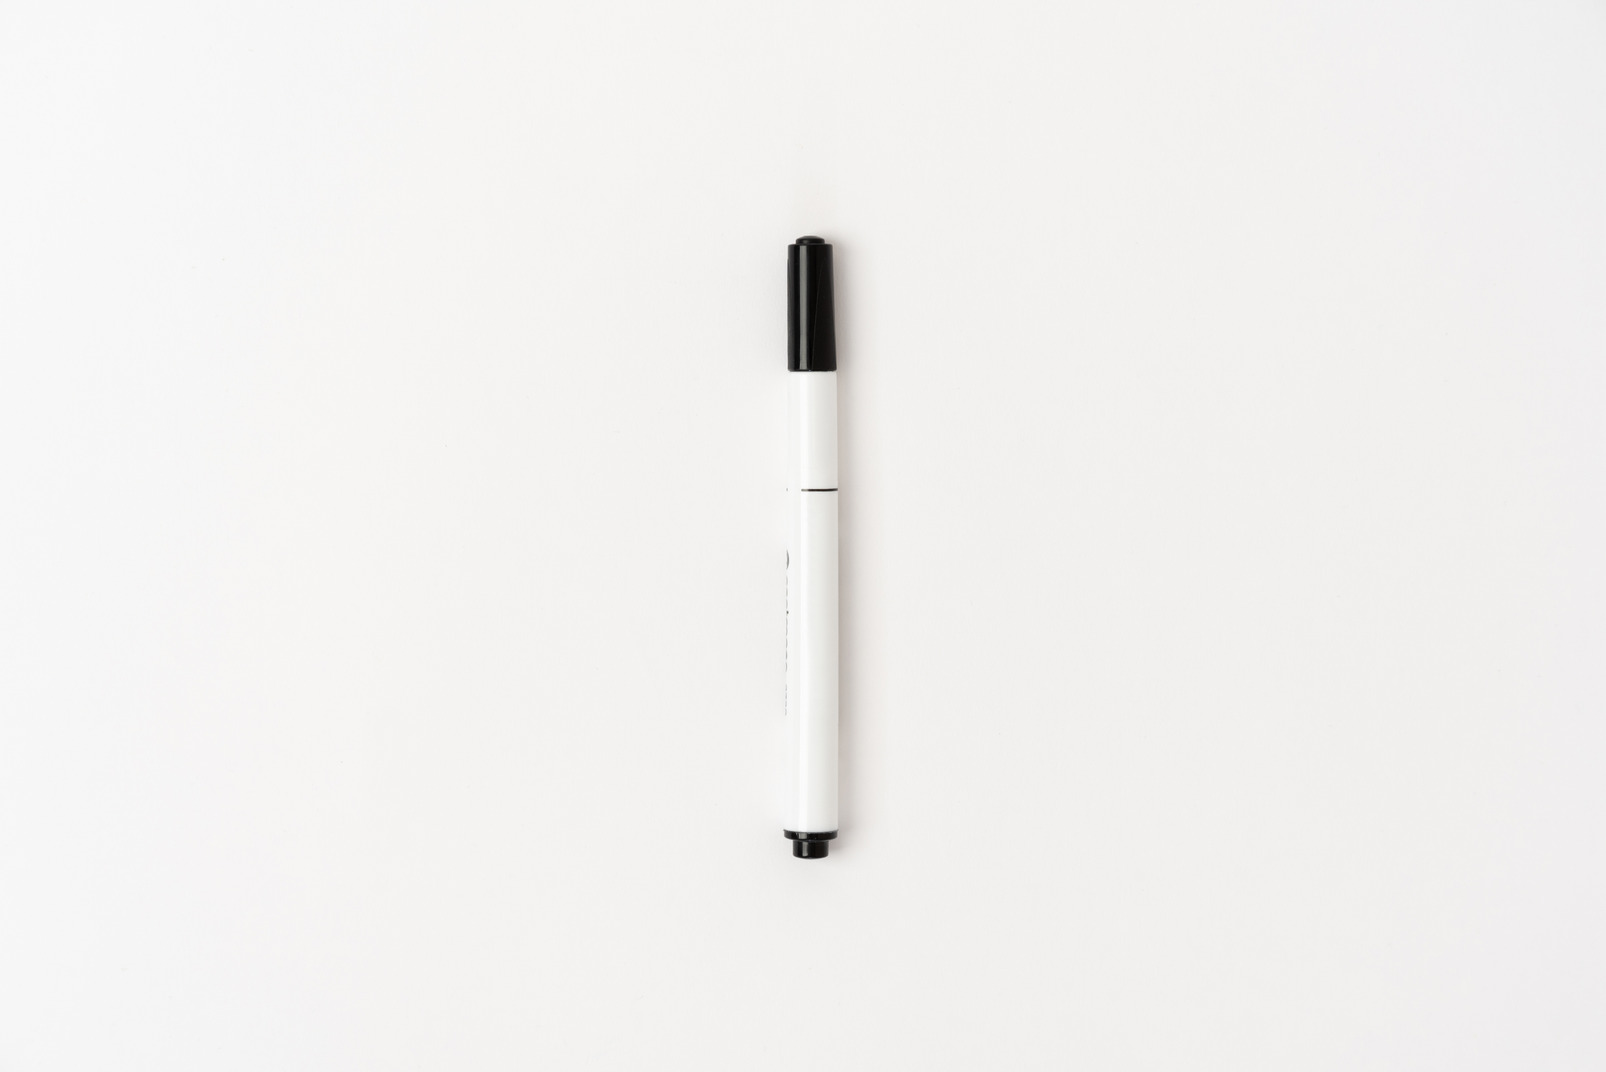 White pen on white background